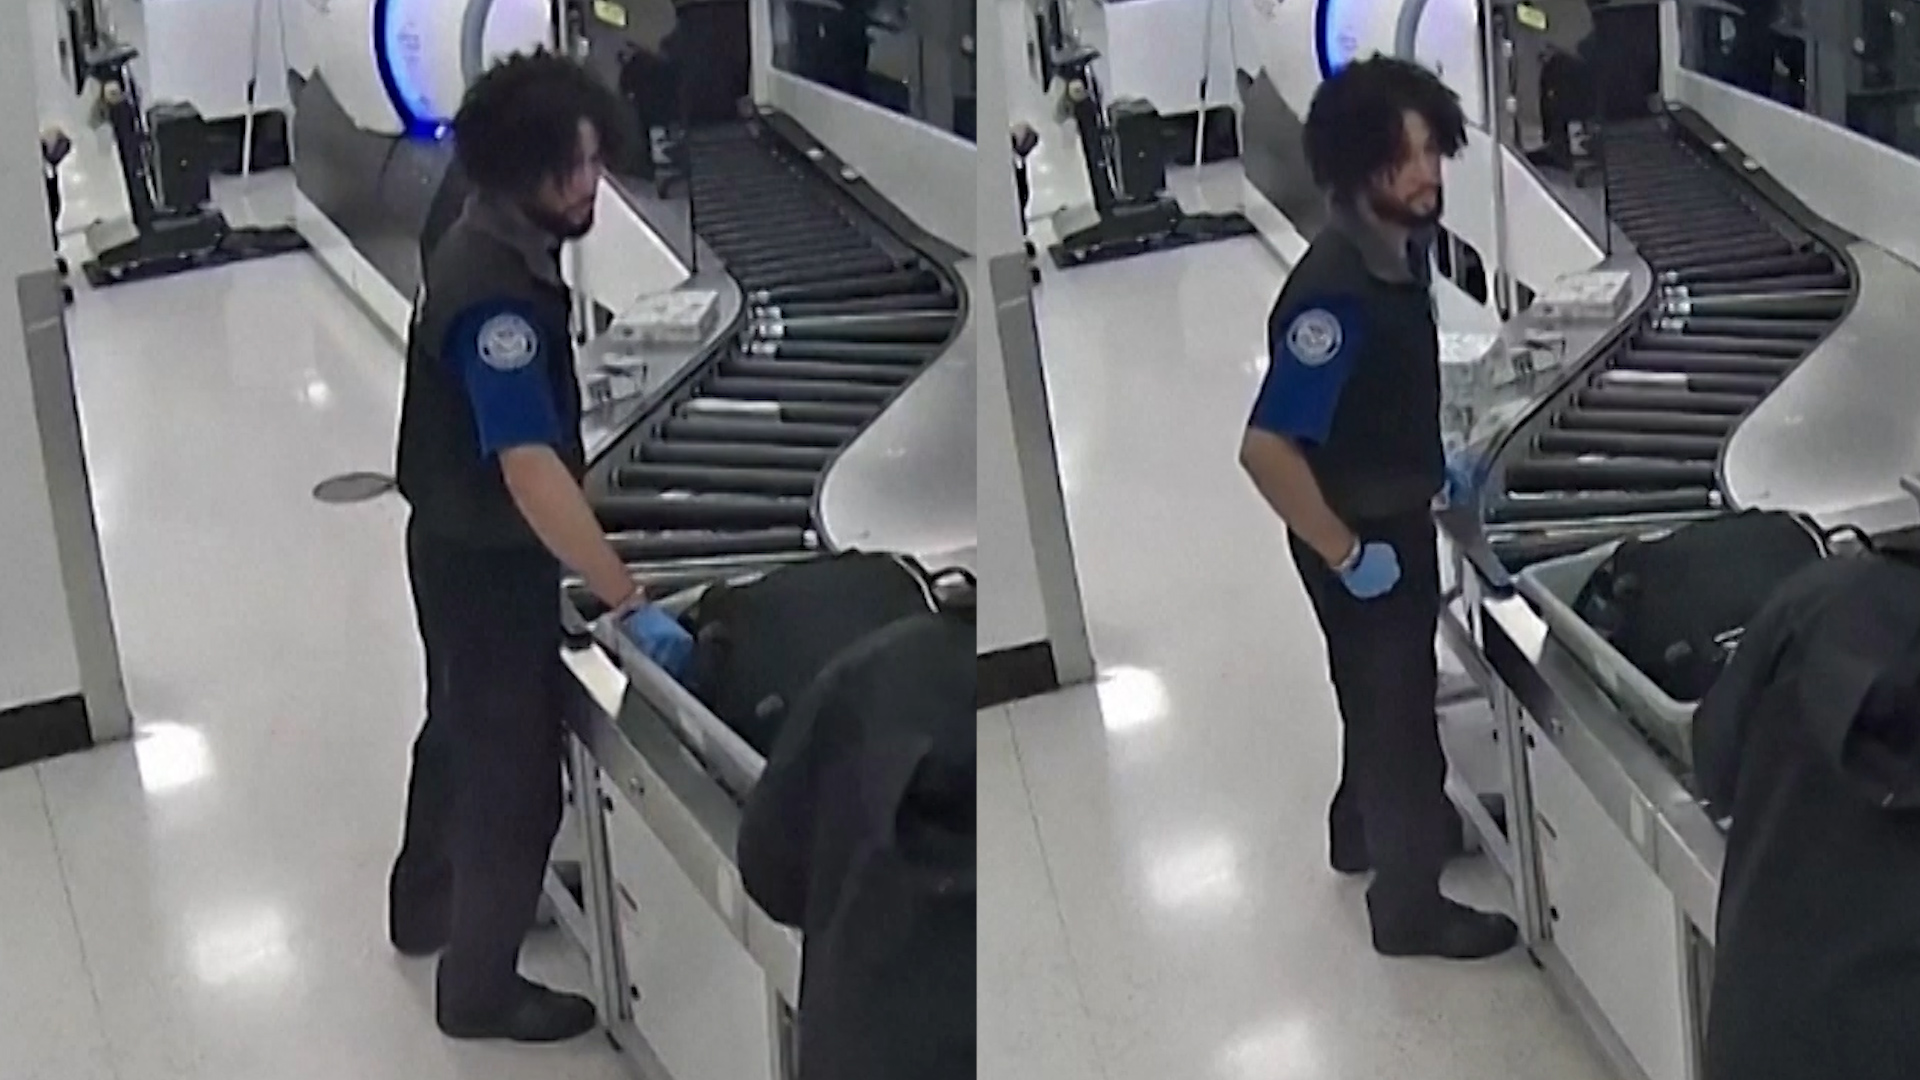 Nhân viên sân bay Mỹ bị cáo buộc lấy trộm đồ của hành khách  - Ảnh 1.